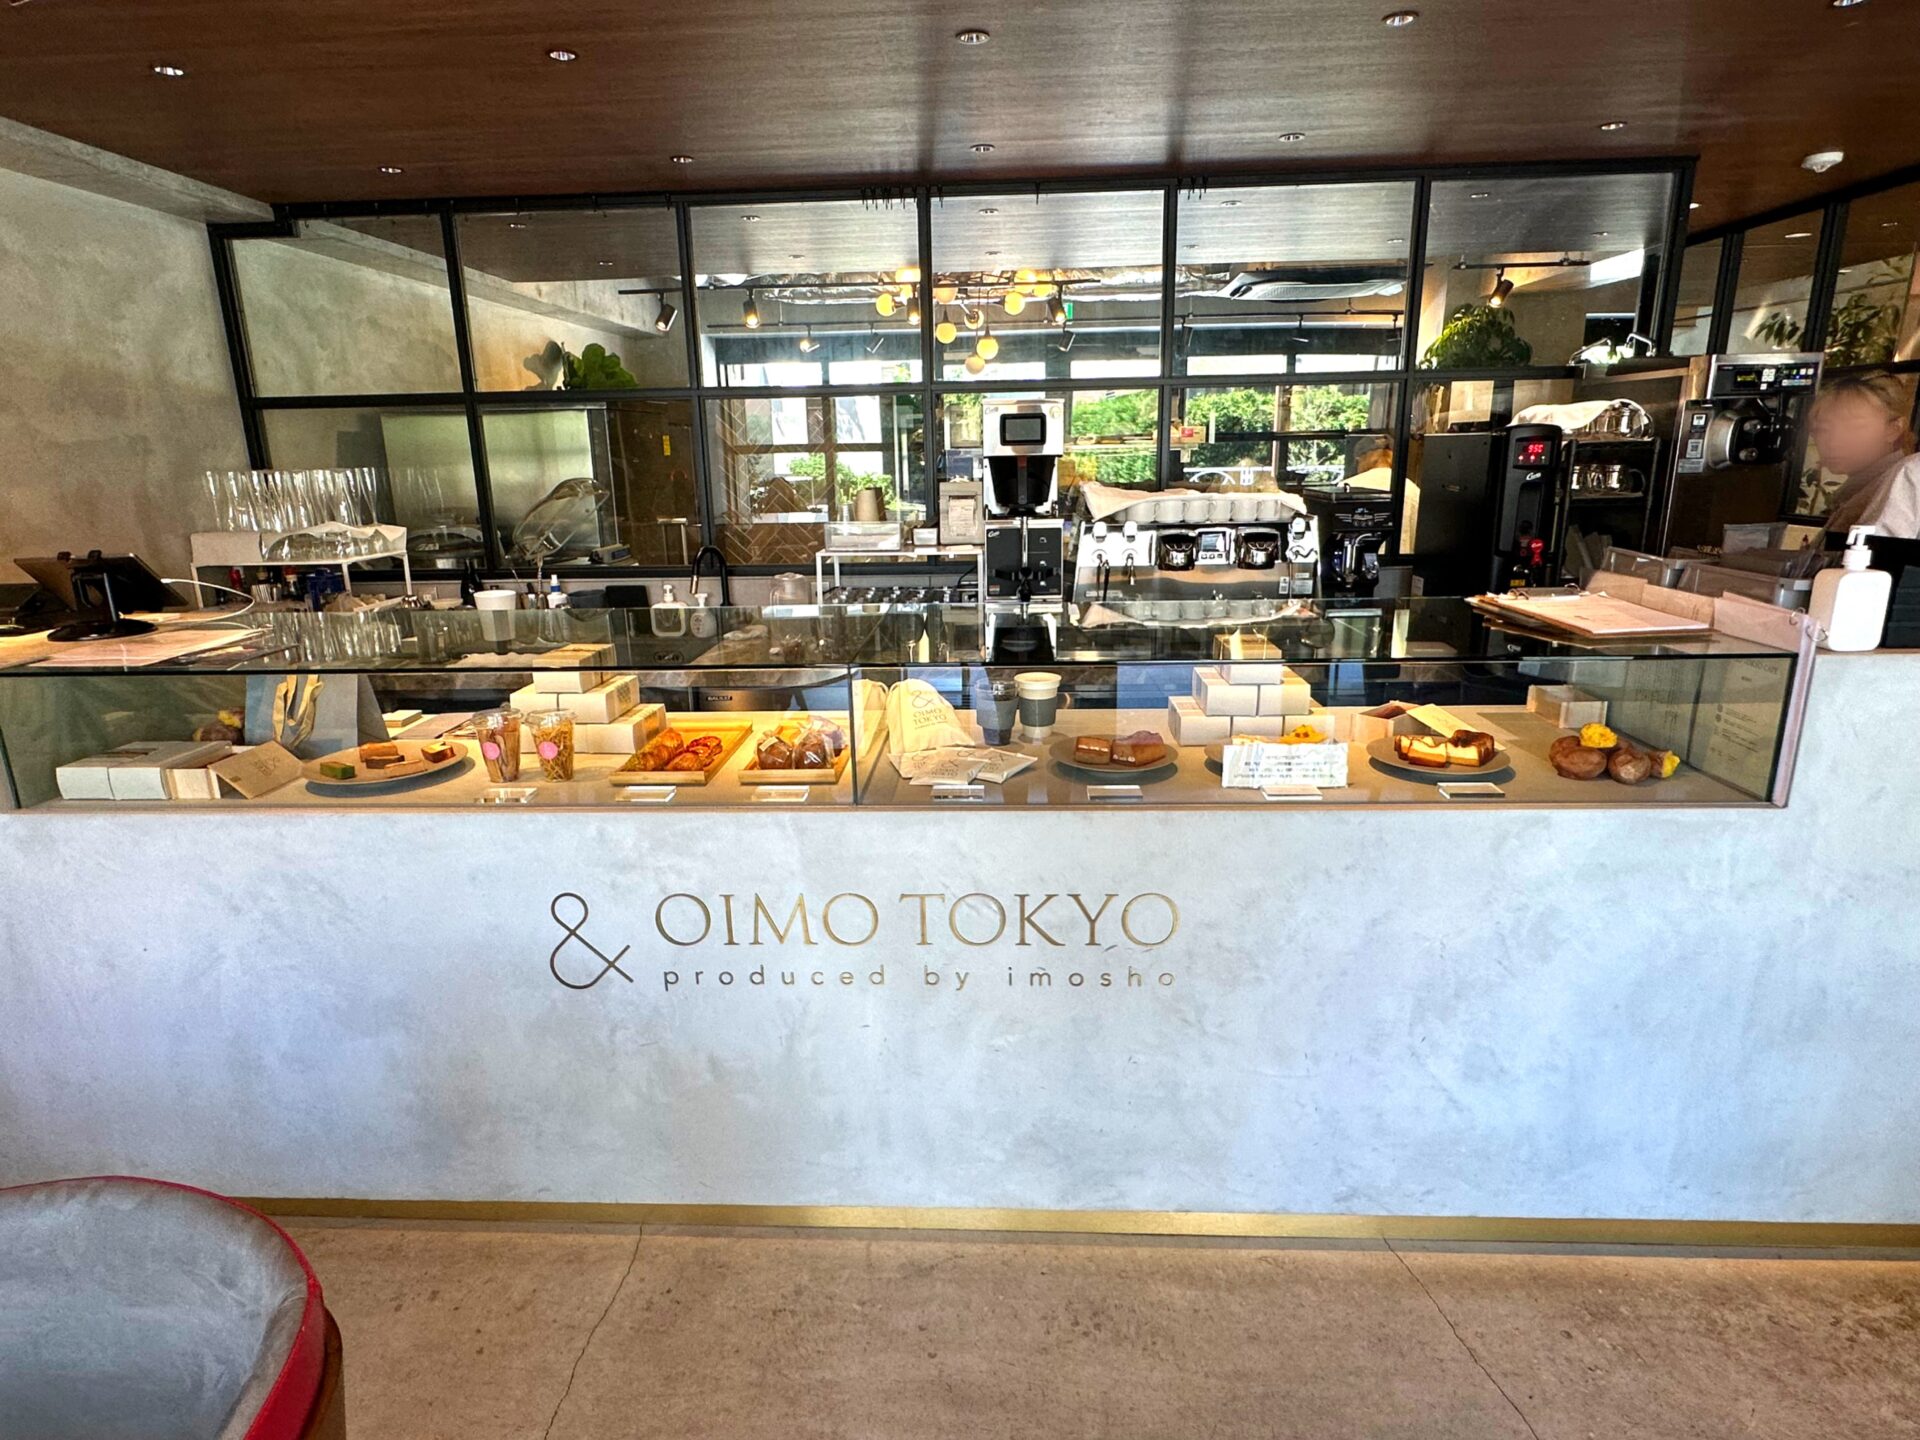 中目黒『&OIMO TOKYO CAFE』店内